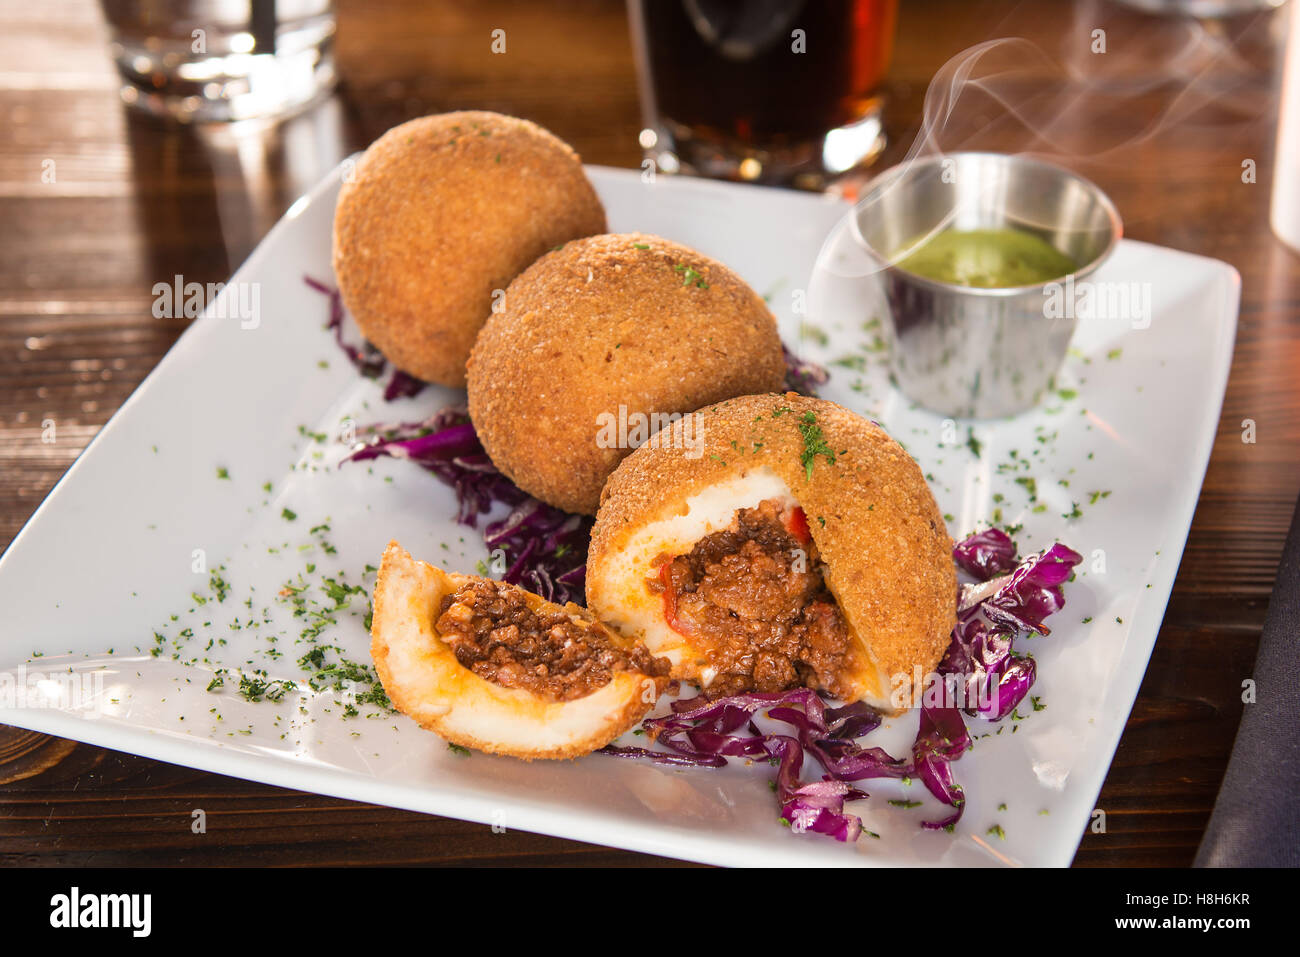 Cuban/Spanish potato balls stuffed with meat Stock Photo